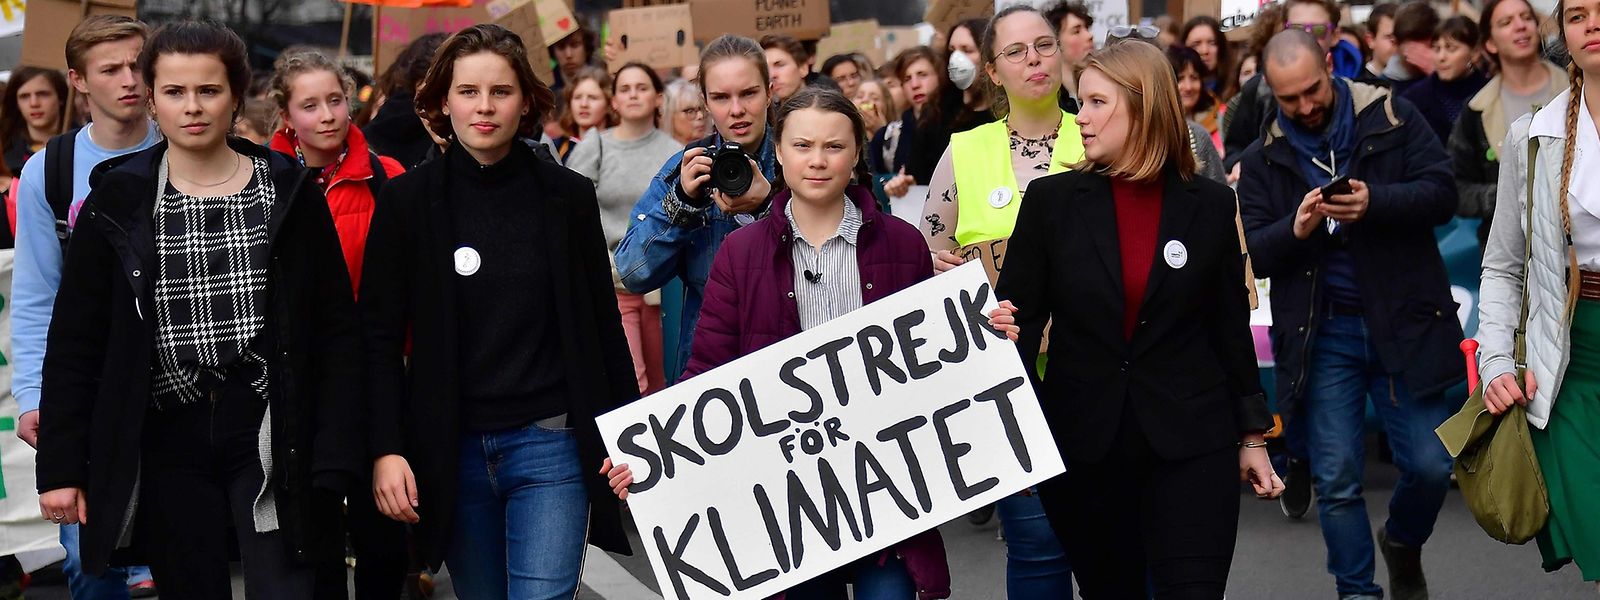 La jeunesse manifeste pour le climat depuis des semaines en Belgique. Au centre de la photo: la militante suédoise Greta Thunberg.